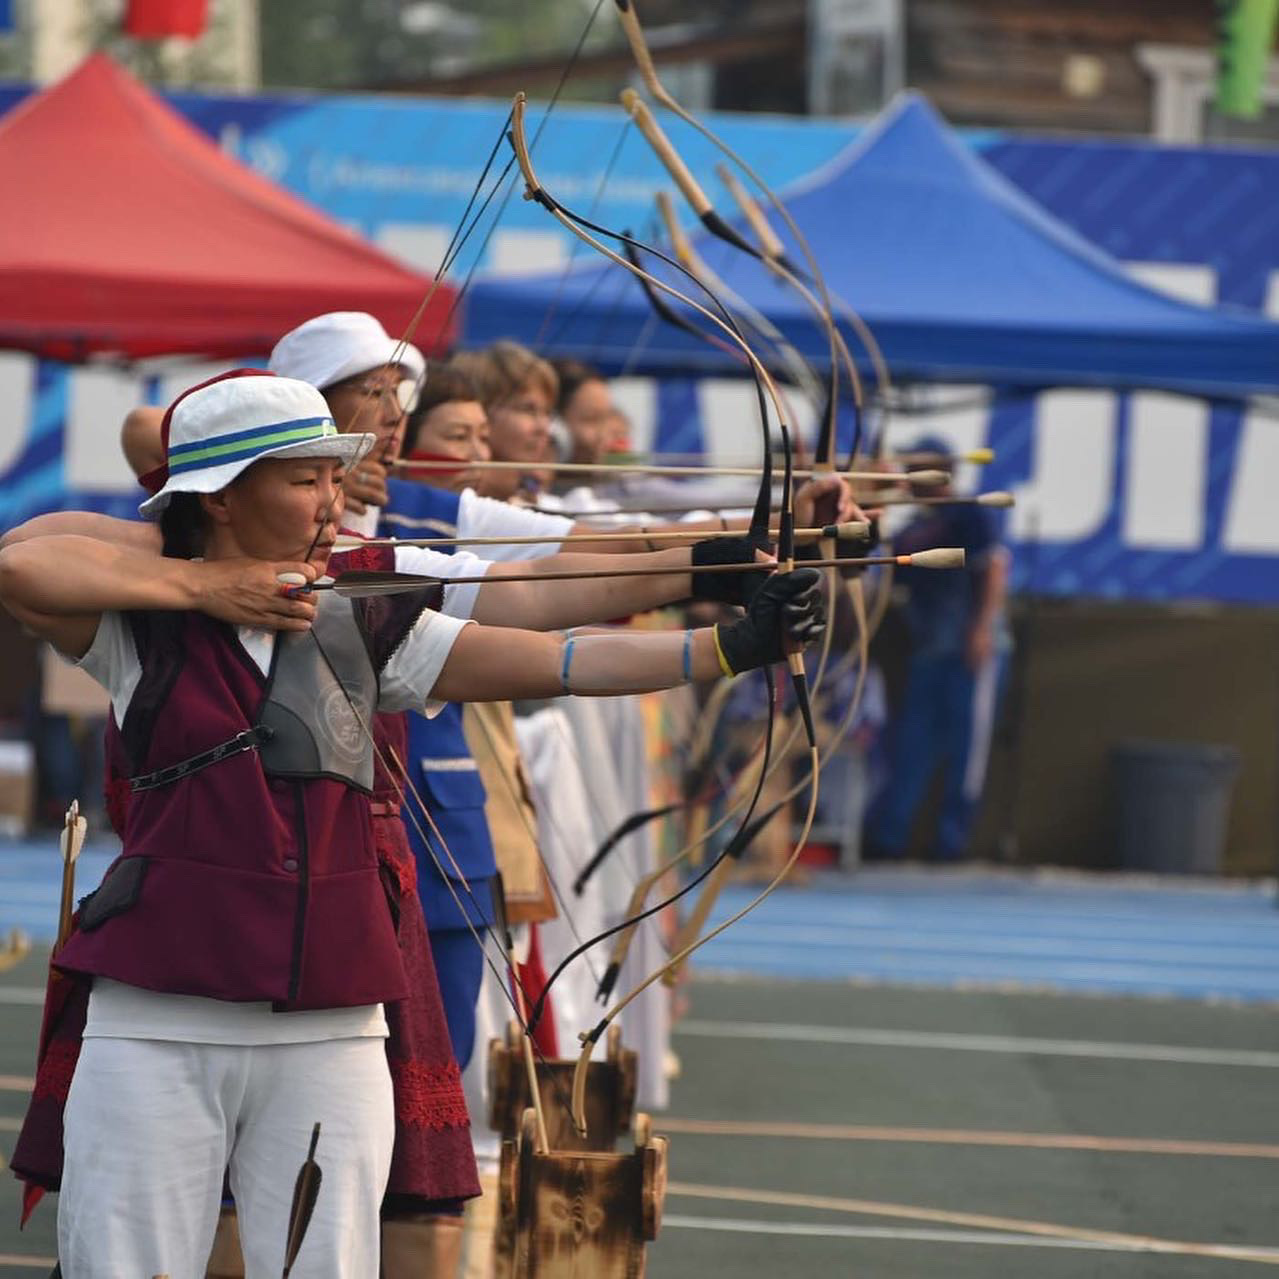 Определены чемпионы по якутской стрельбе из традиционного лука среди женщин